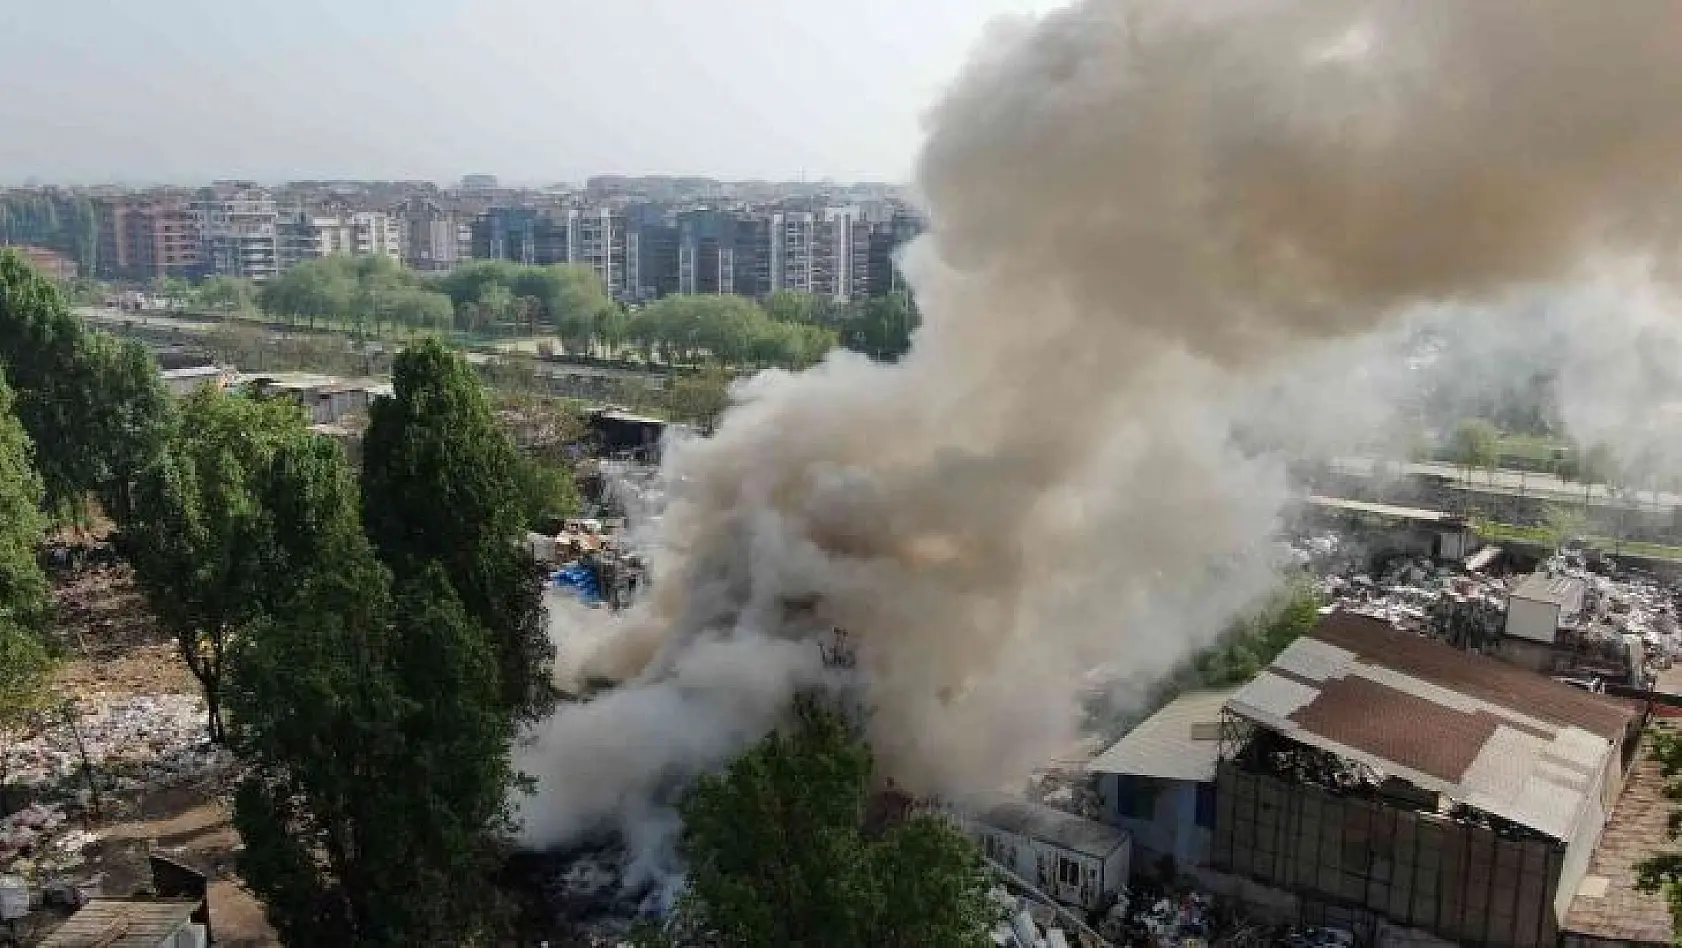 Bursa'da geri dönüşüm tesisindeki yangın havadan görüntülendi